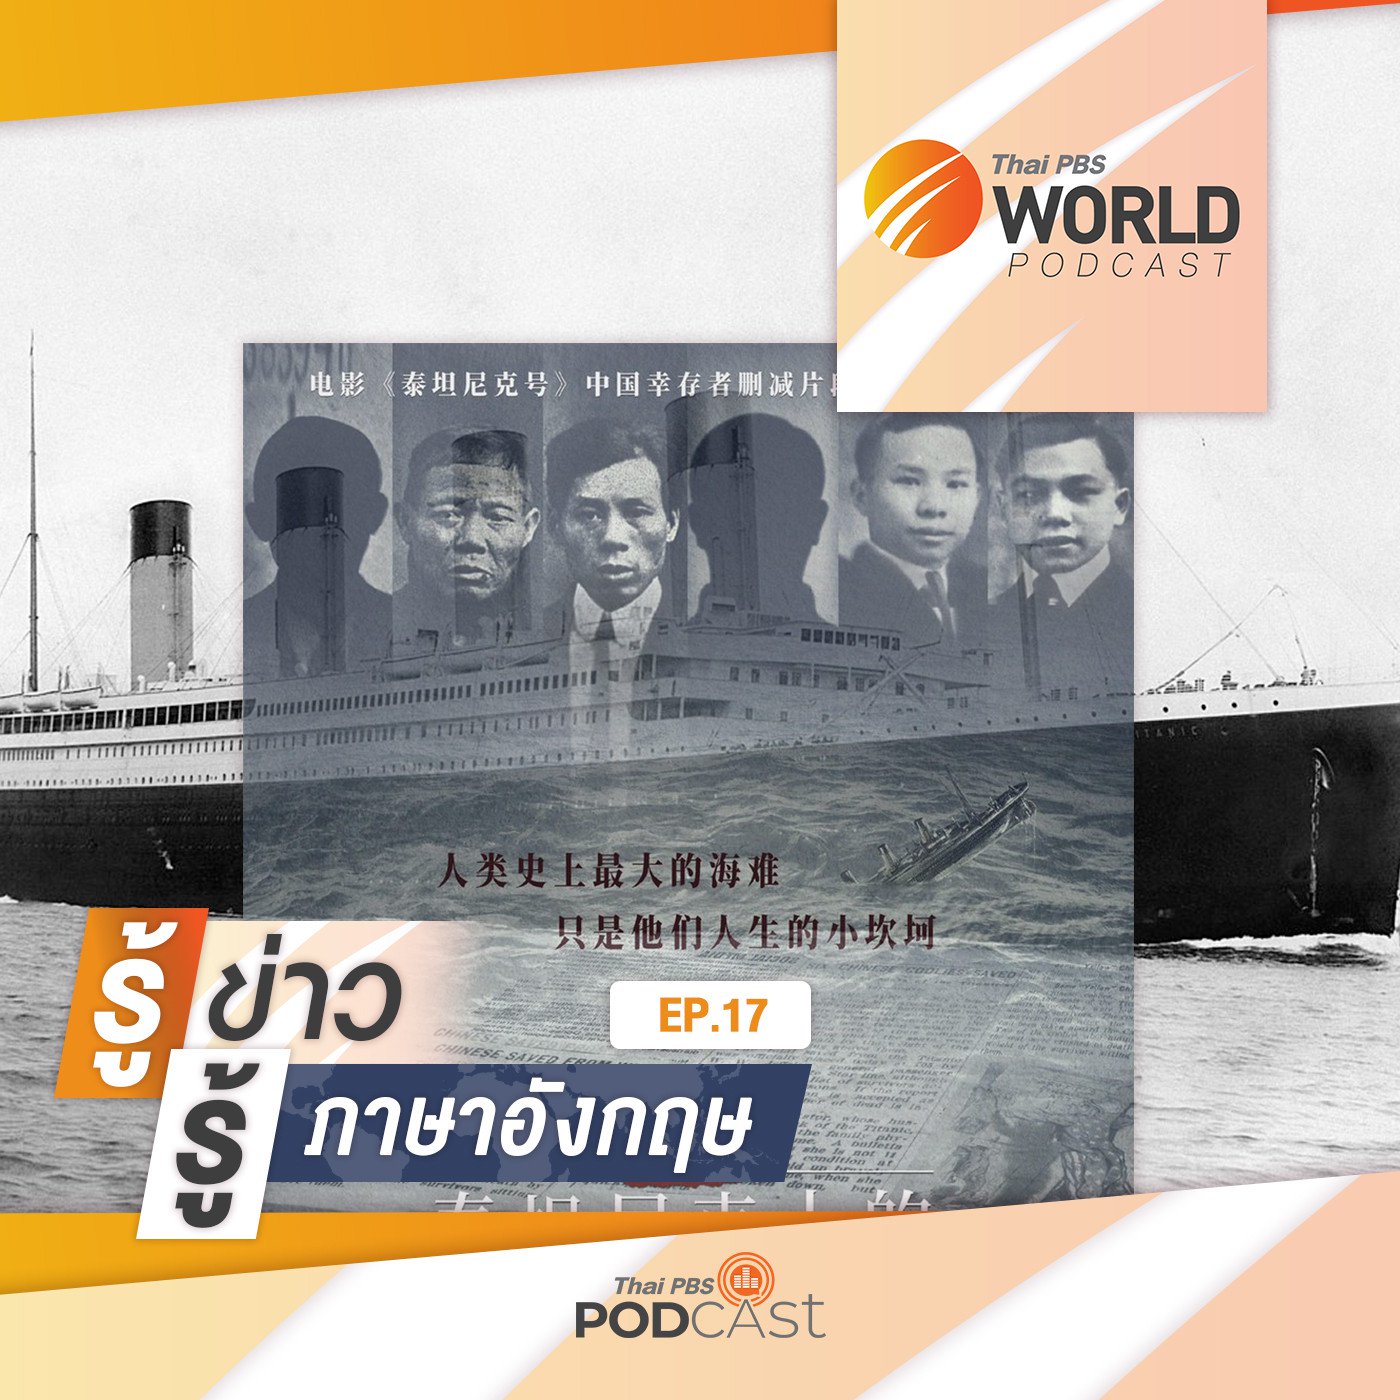 Thai PBS World Podcast - รู้ข่าว รู้ภาษาอังกฤษ EP. 17: รู้ข่าว รู้ภาษาอังกฤษ - เรื่องราวของผ�